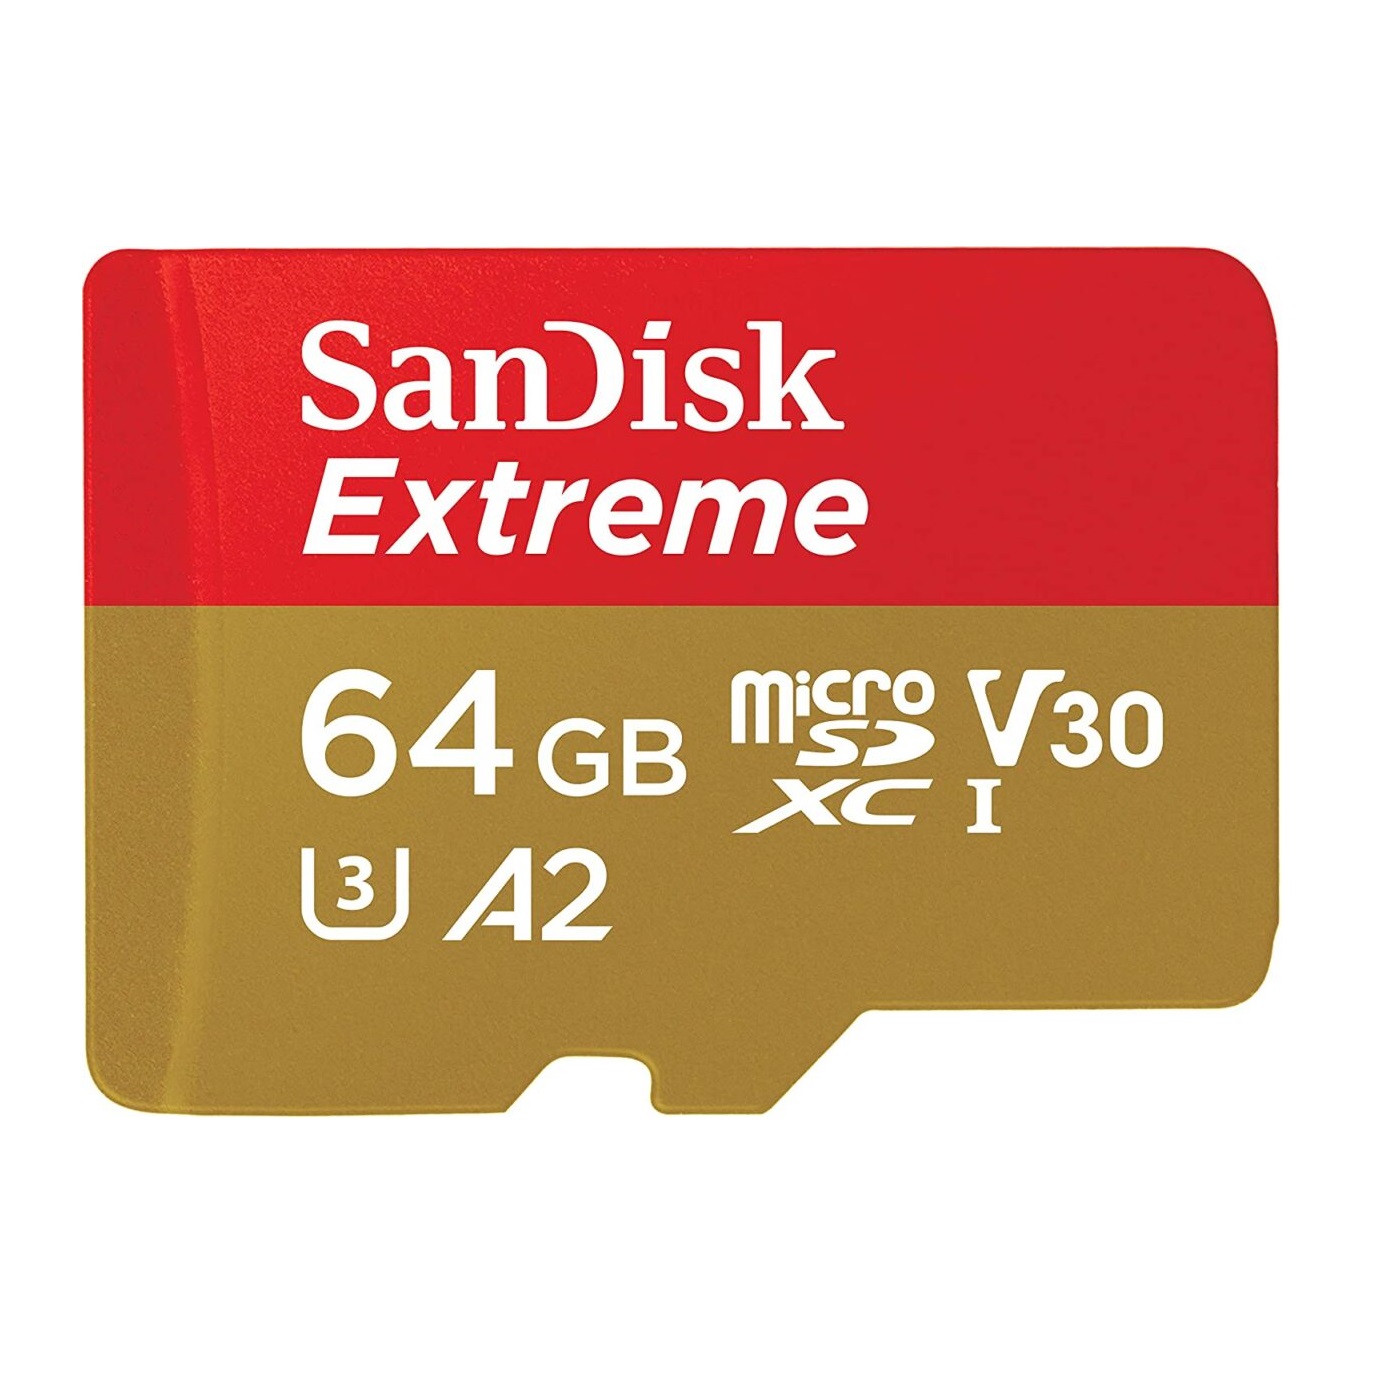 کارت حافظه microSDXC سن دیسک مدل Extreme کلاس A2 استاندارد UHS-I U3 سرعت 160MBps ظرفیت 64 گیگابایت